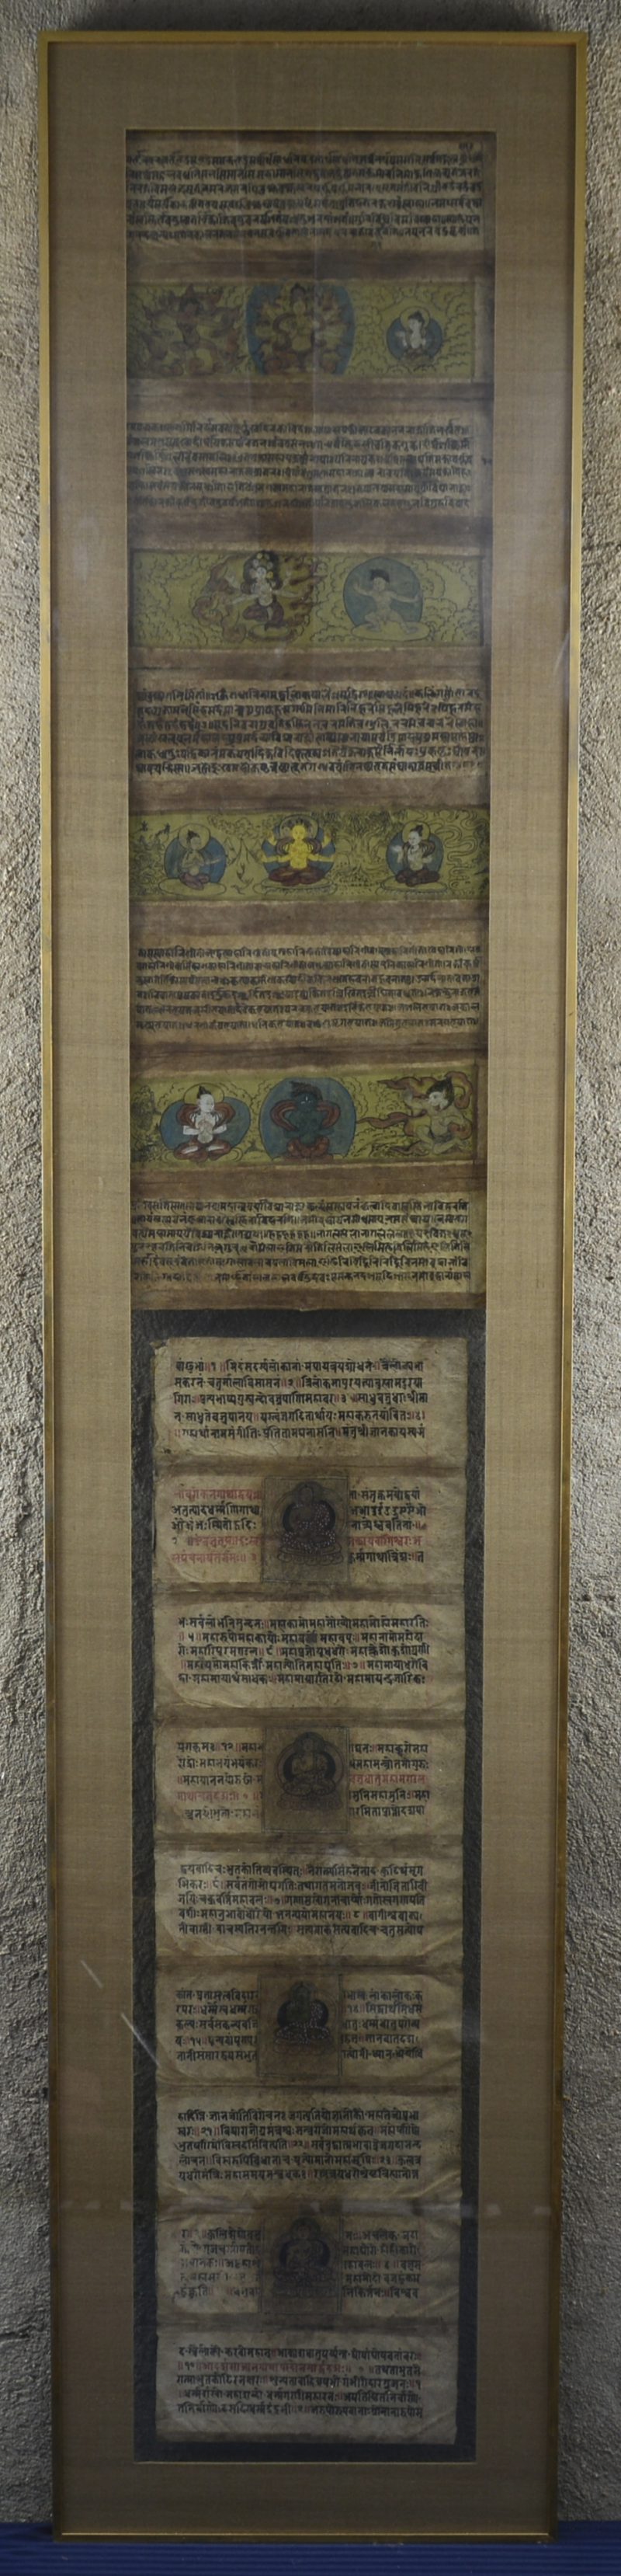 Een Boeddhistisch verhaal, handgeschilderd op papier. Dubbelzijdig.